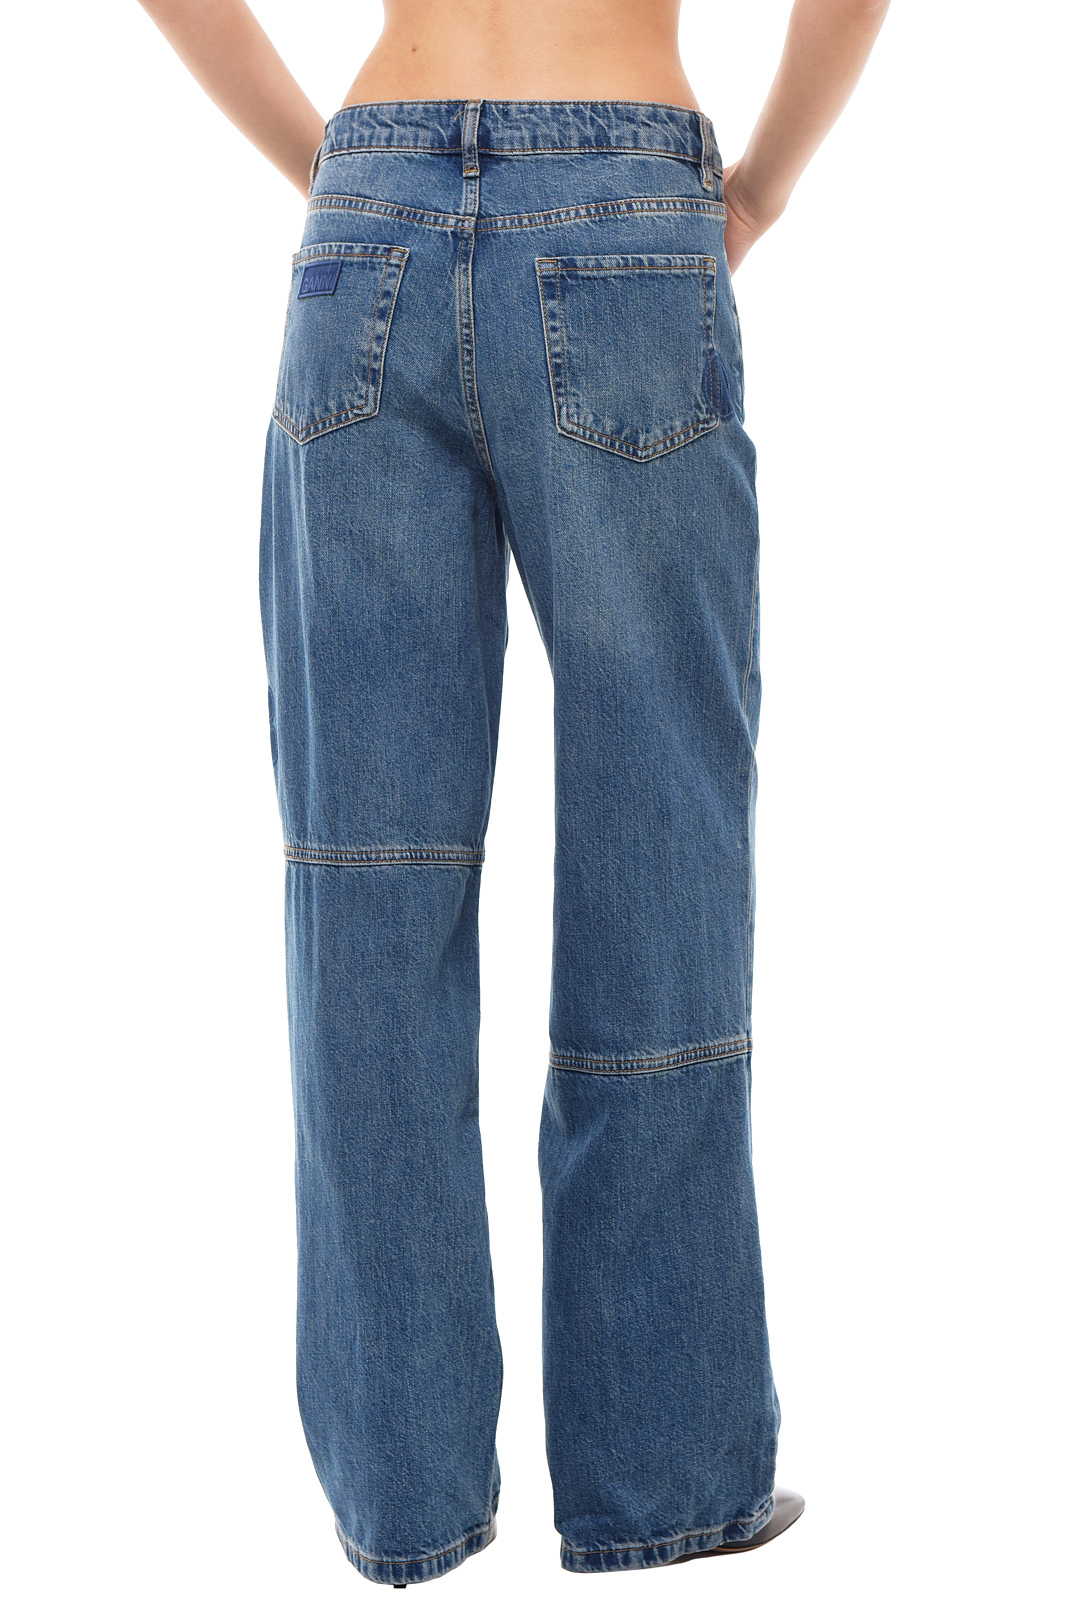 Подовжені джинси GANNI GANw23004